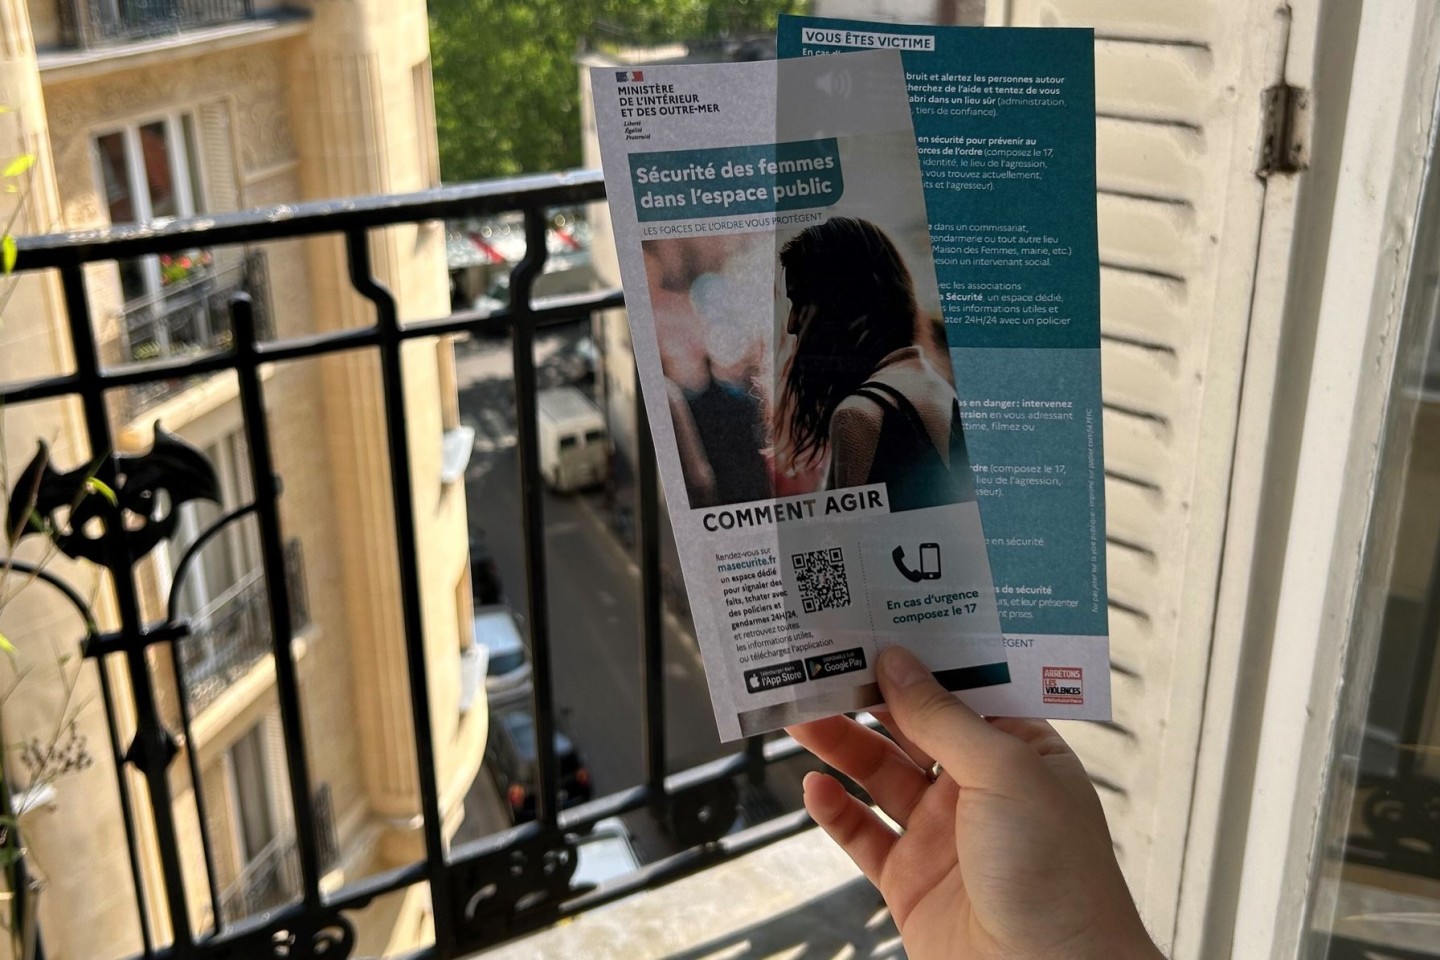 Die Flyer mit Verhaltenstipps für Frauen gegen sexuelle Belästigung im öffentlichen Raum sorgen in Frankreich für Wirbel.